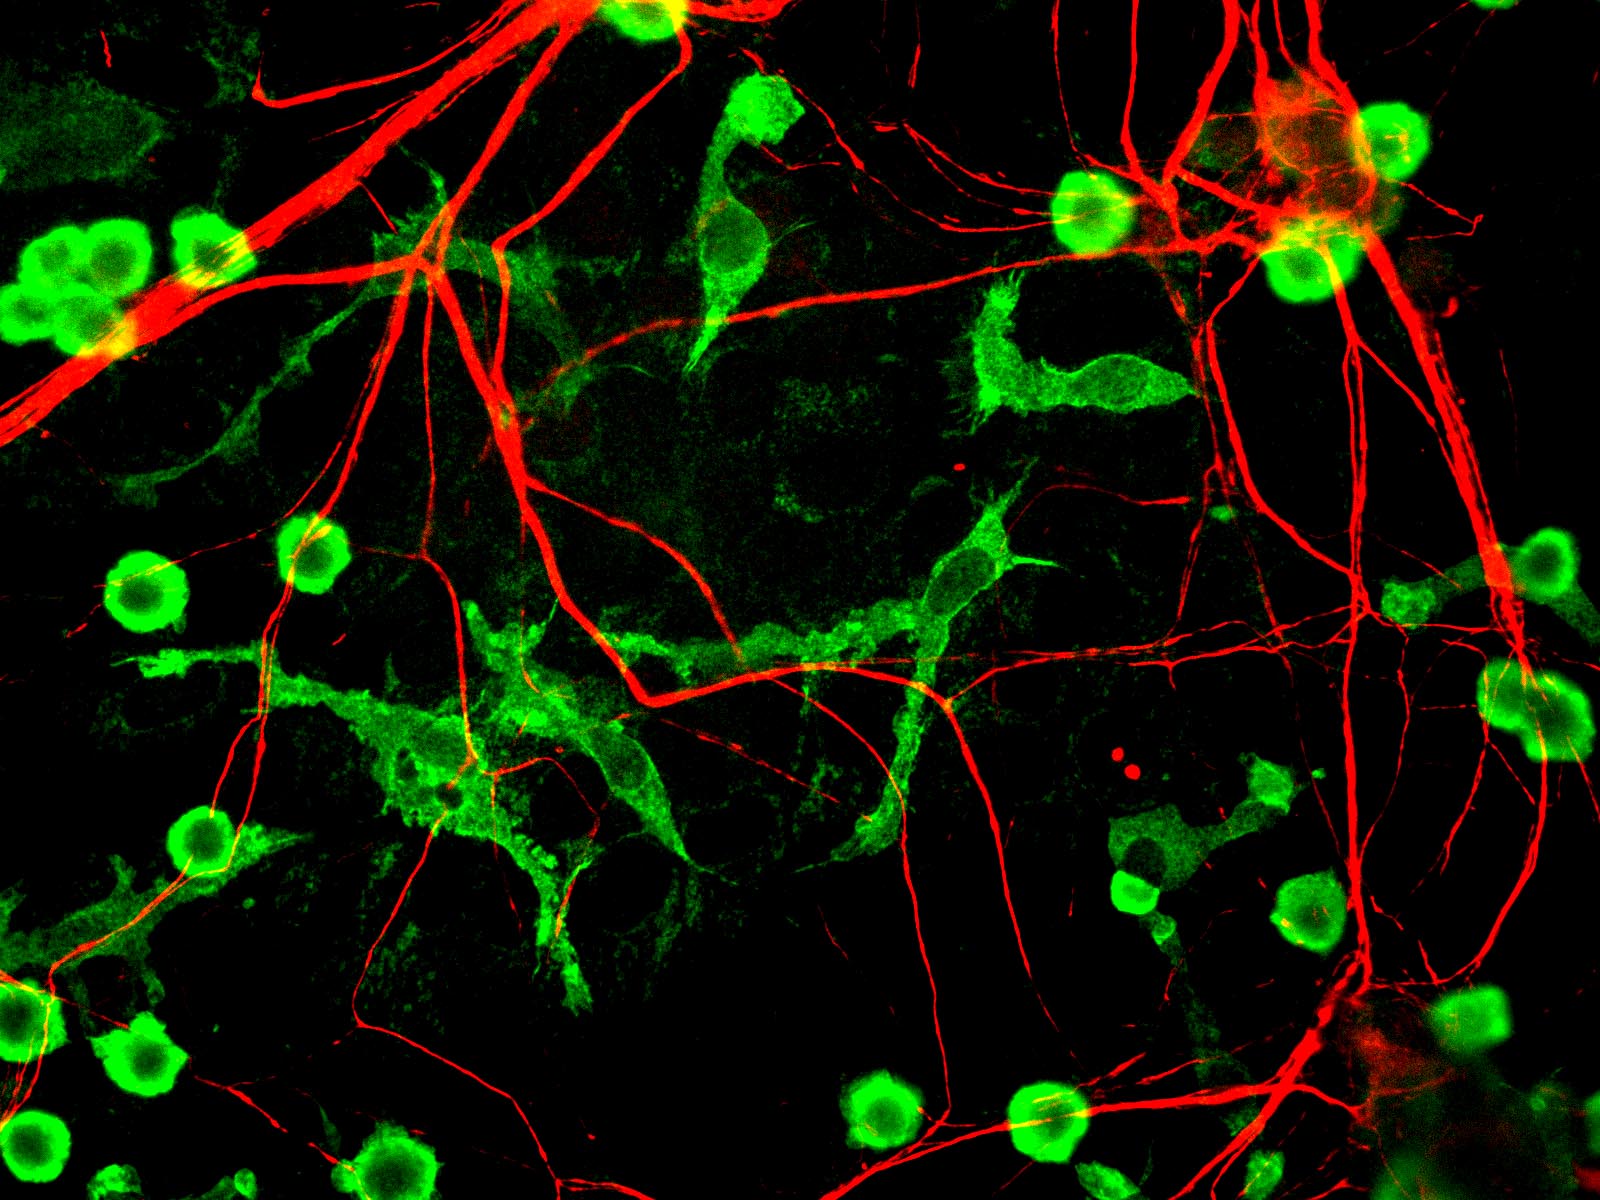 Le nombre de neurones chez une personne&nbsp;est estimé entre 86 et 100 milliards, et il&nbsp;diminue au cours des années.&nbsp;©&nbsp;Journal of Cell Biology, Flickr, cc by nc&nbsp;sa 2.0